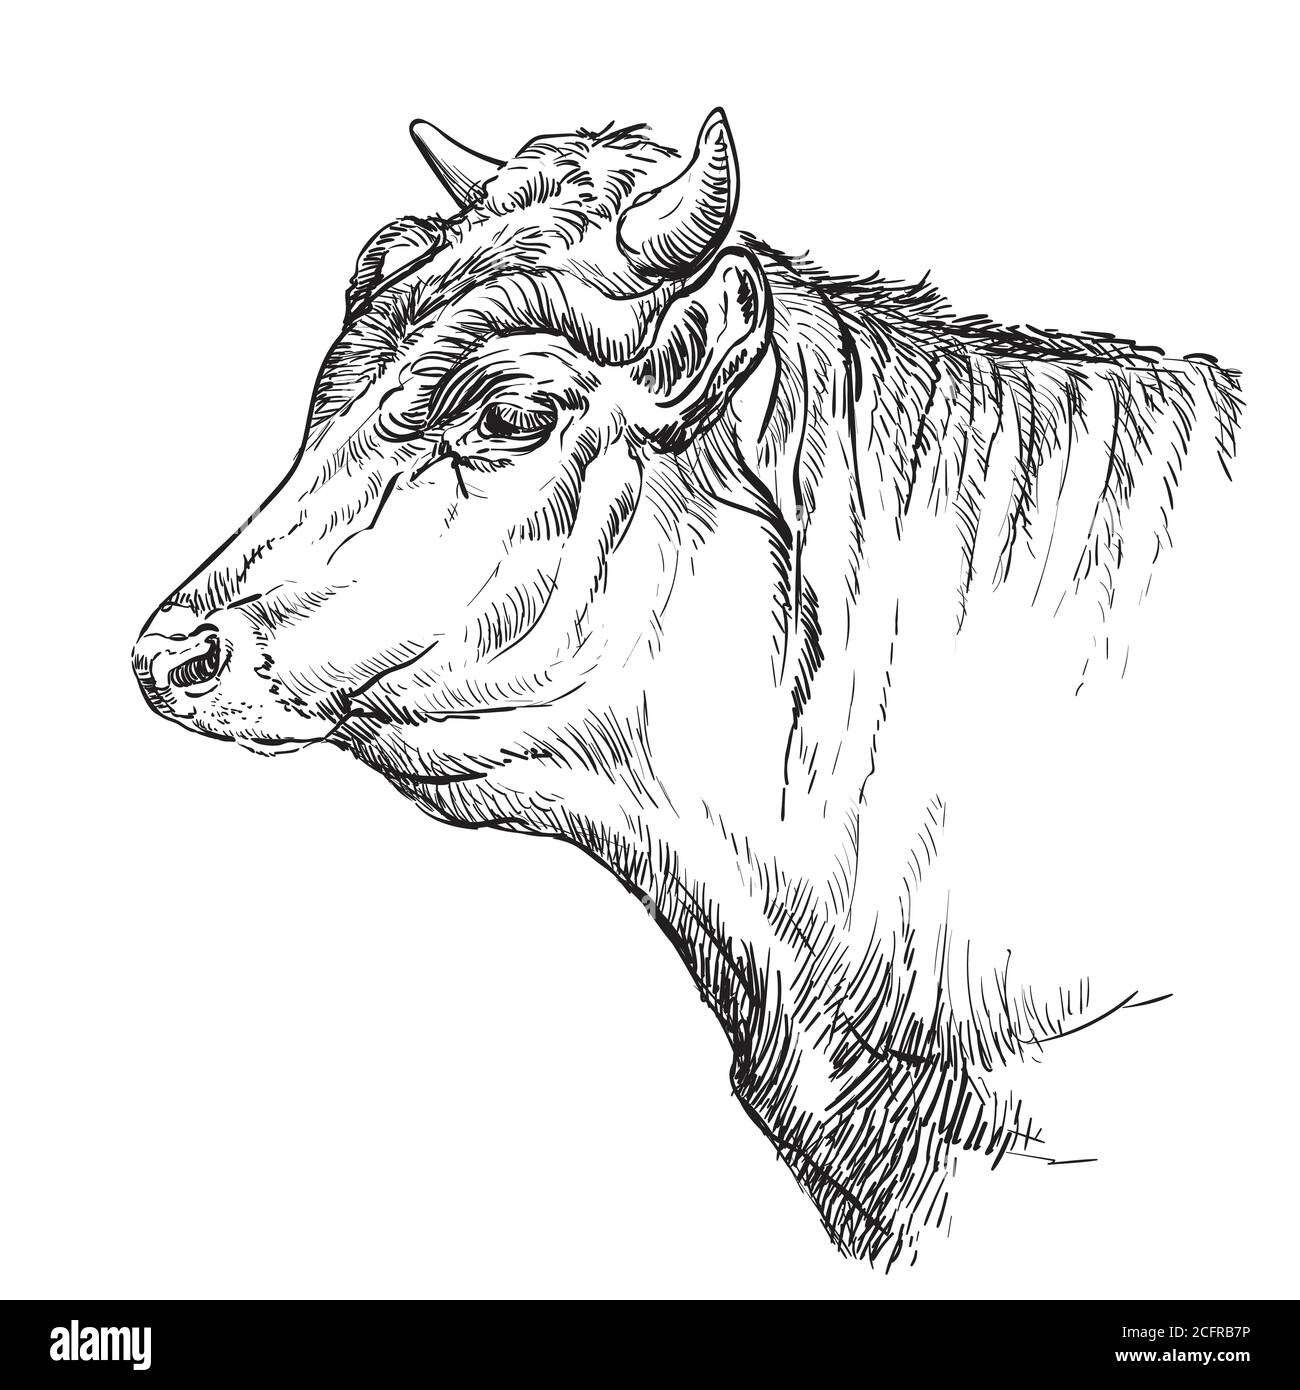 Schizzo monocromo della testa della mucca illustrazione vettoriale disegnata a mano isolata su sfondo bianco. Illustrazione vintage per etichette, poster, stampa e design. Illustrazione Vettoriale